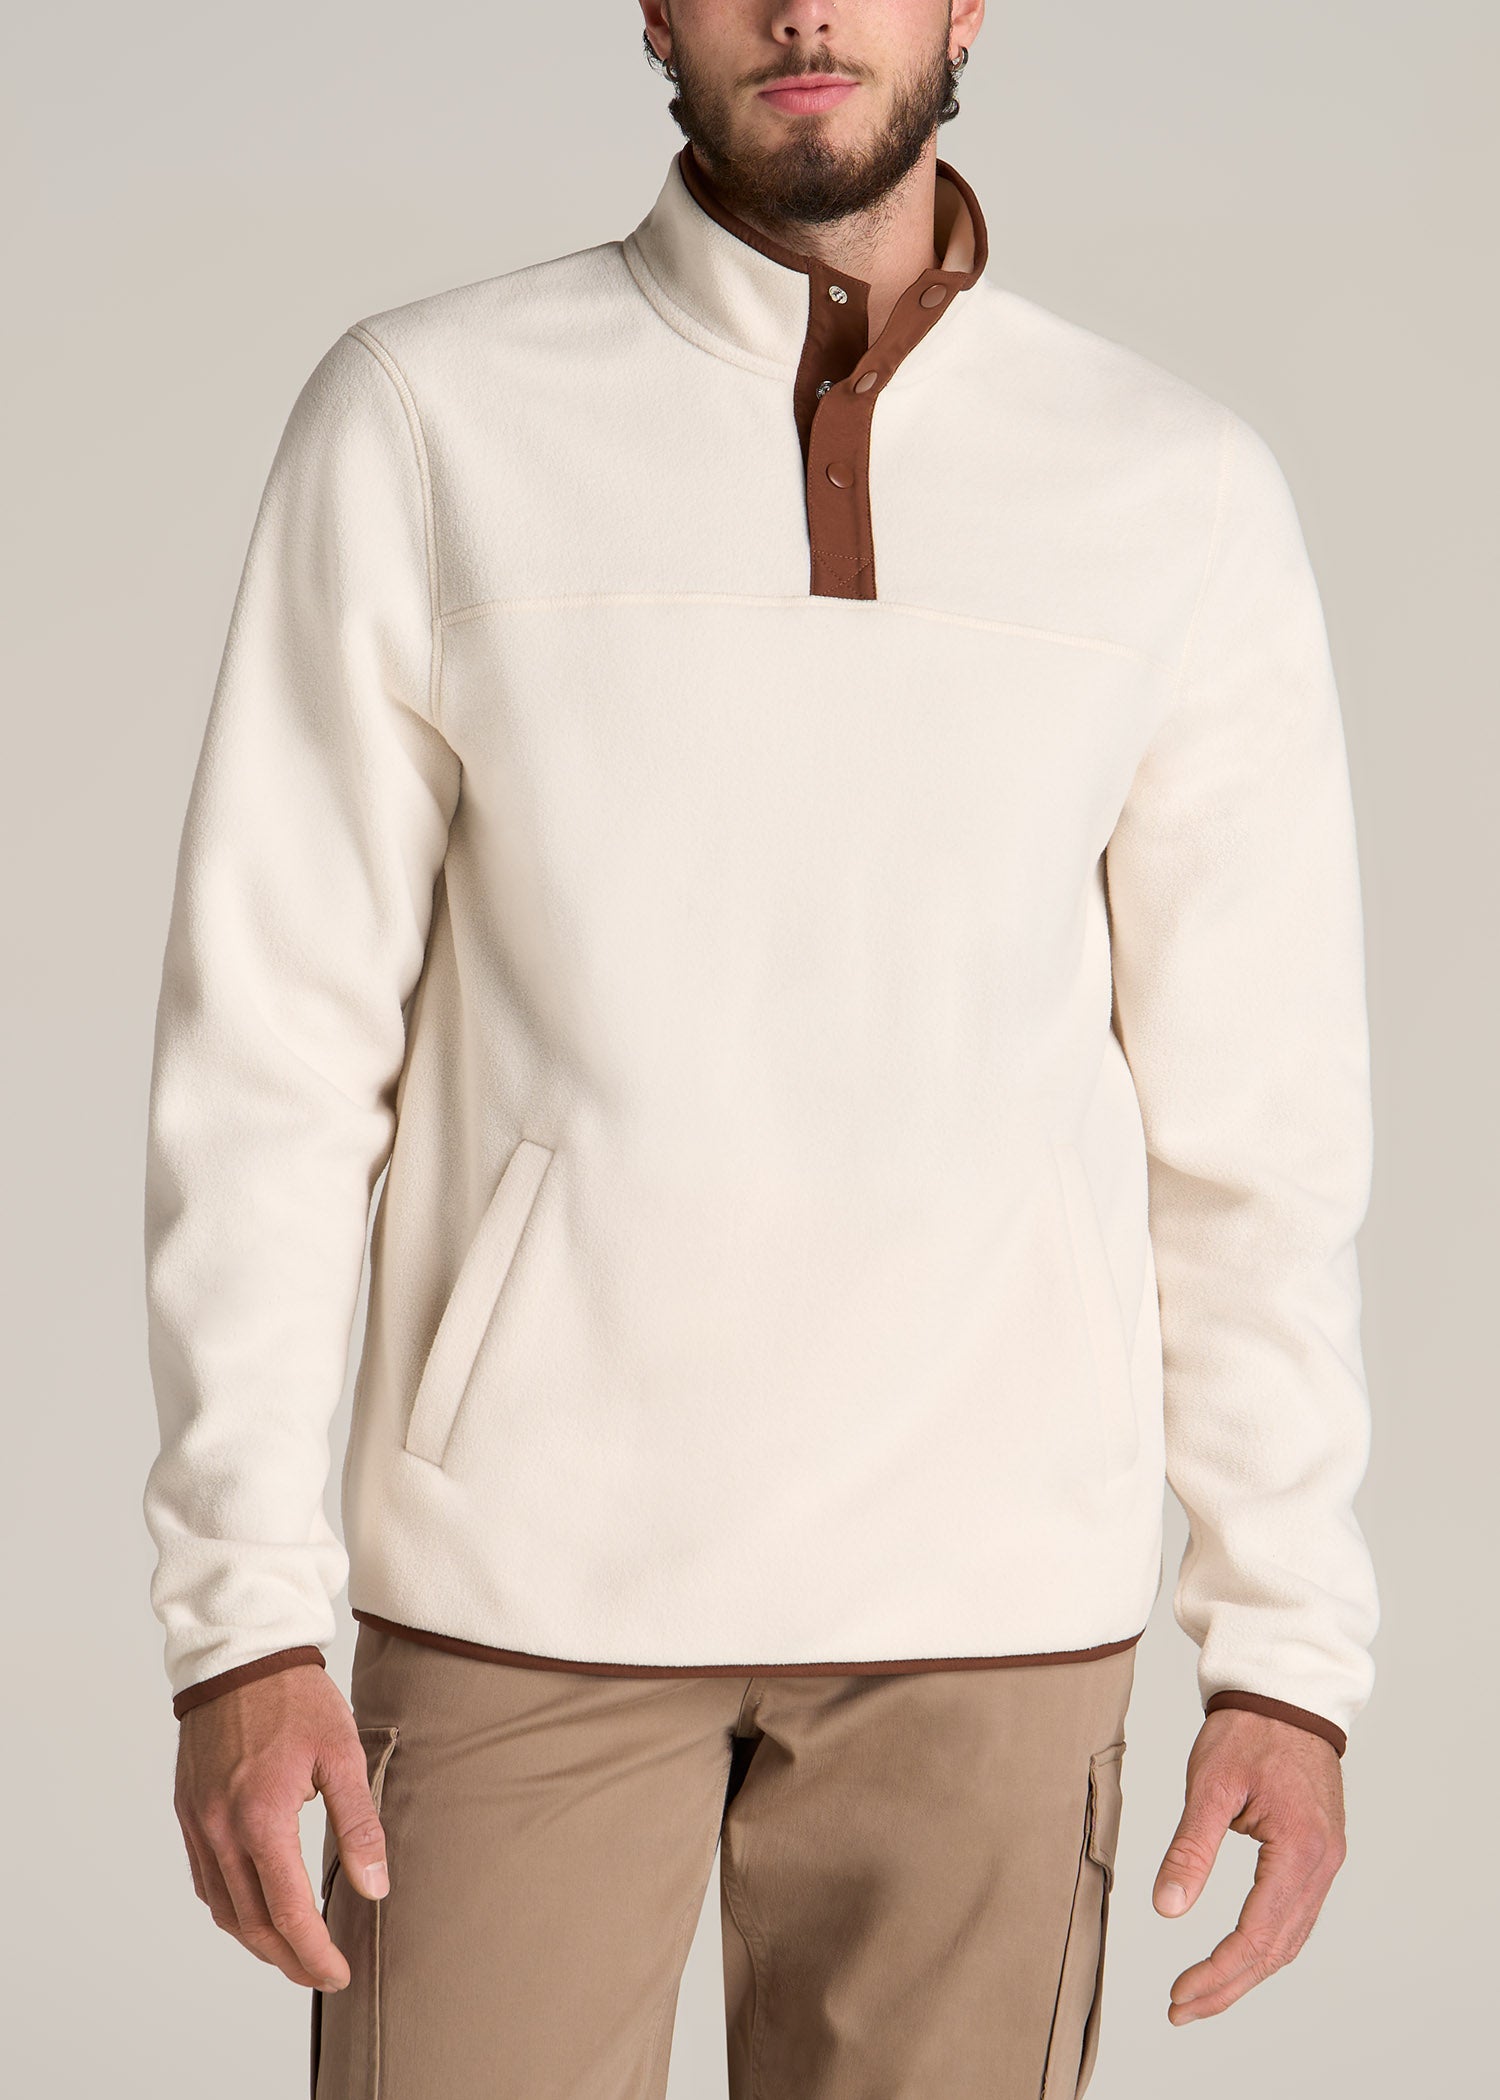 Polar Fleece 3-Snap Pullover Sweatshirt for Tall Men in Natural